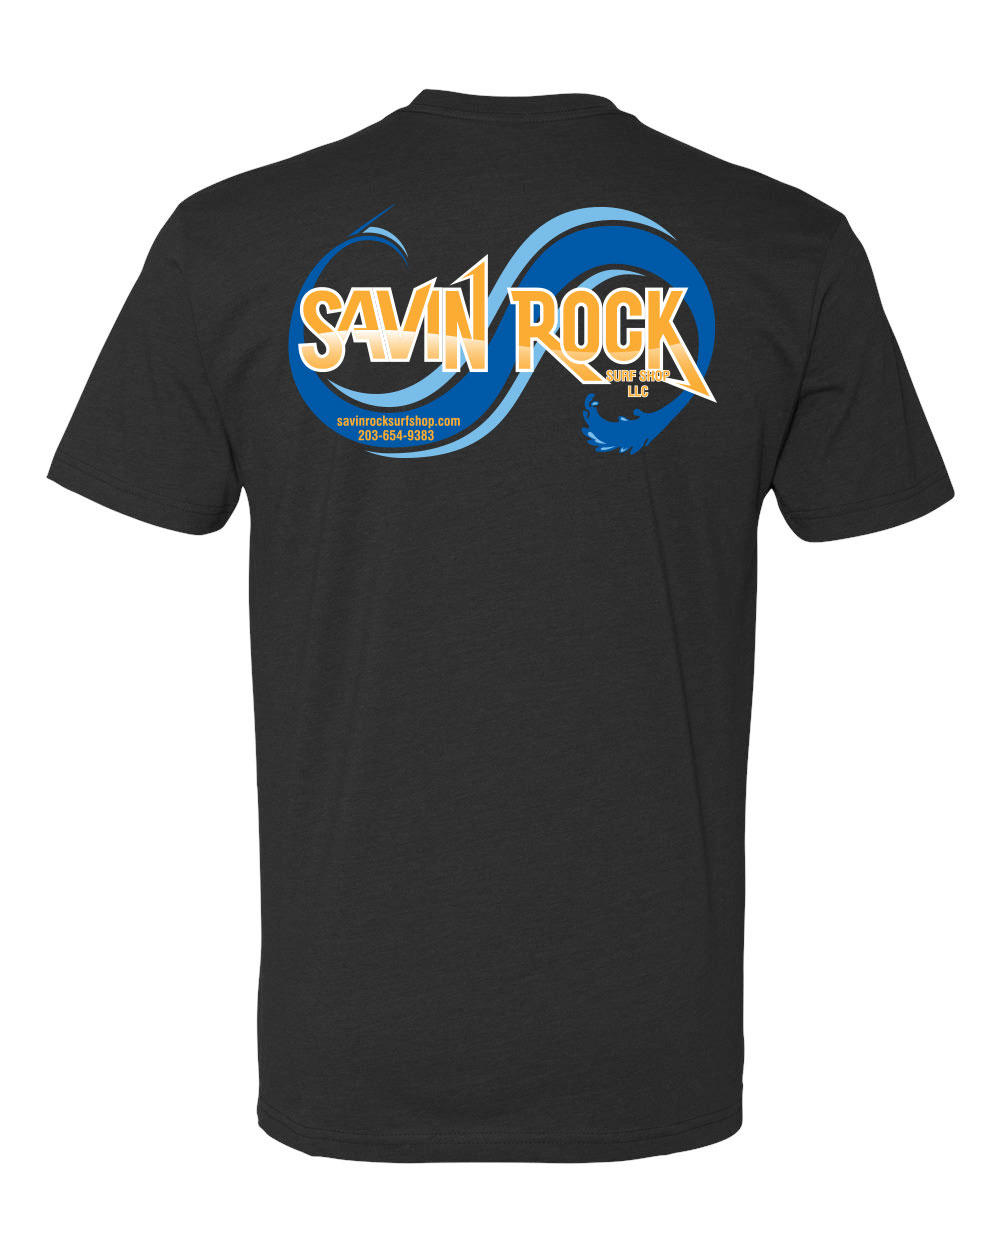 Savin Rock Surf Shop Photo